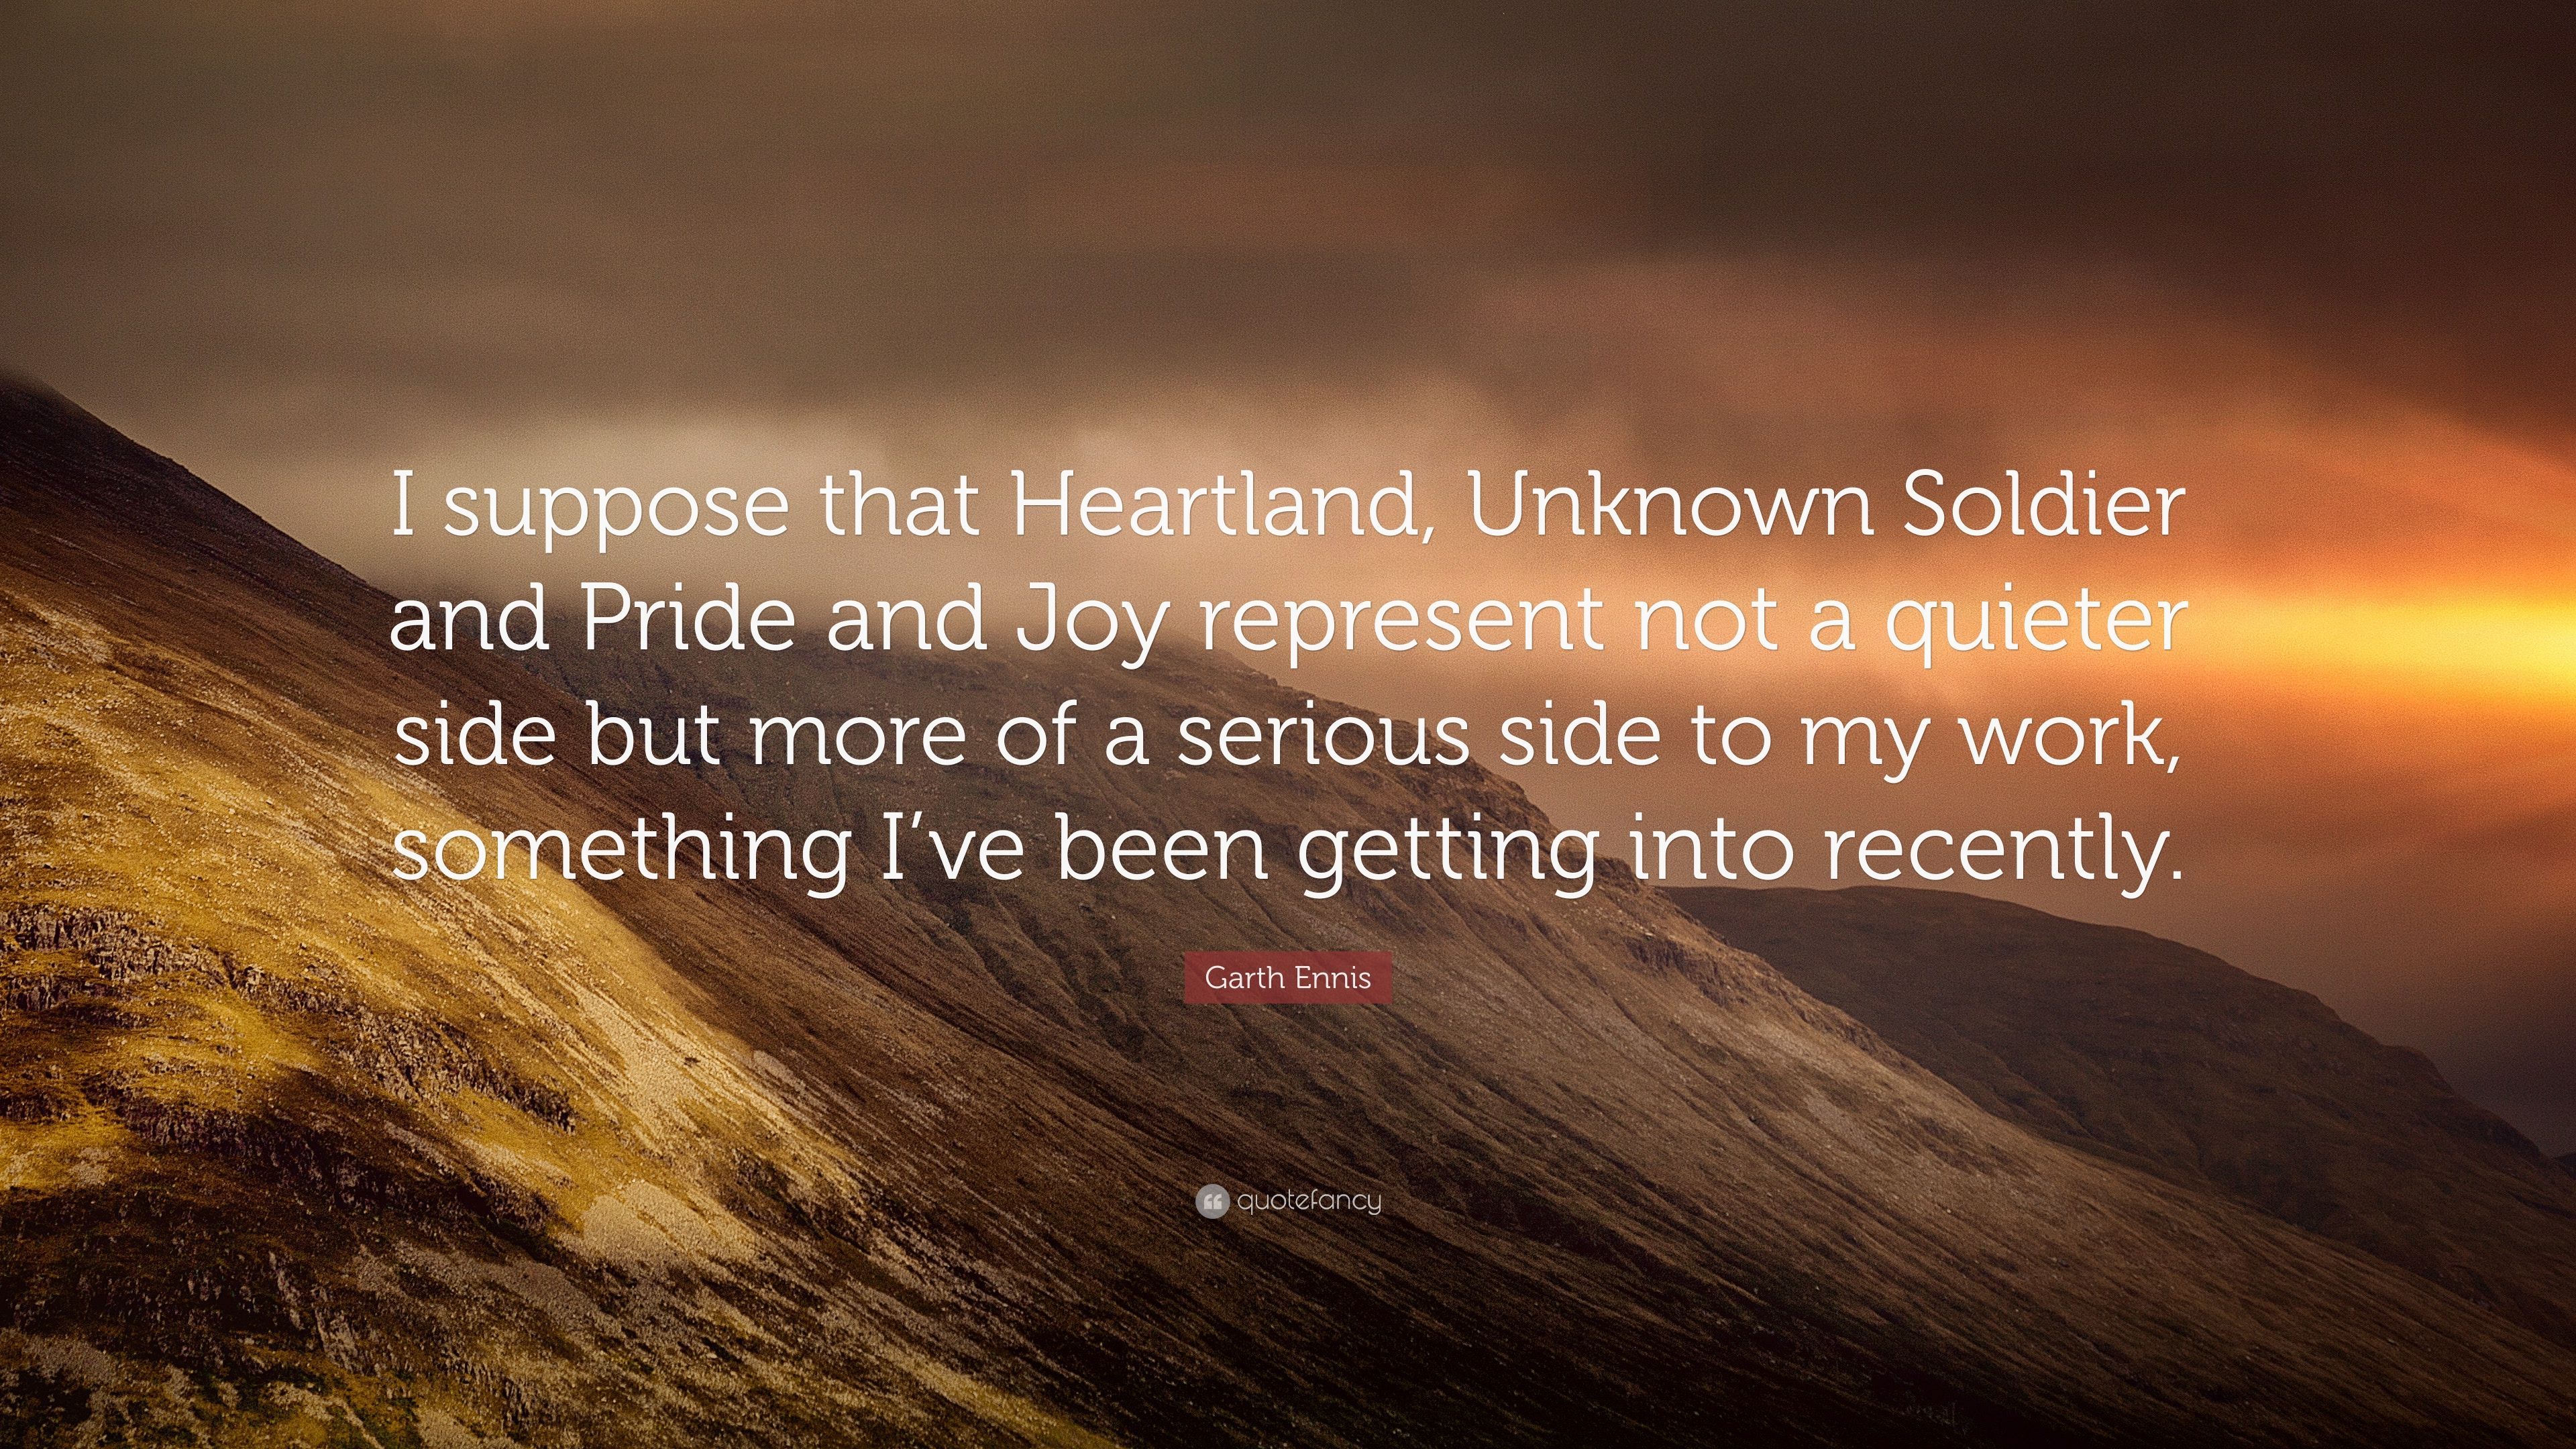 Garth Ennis Quote: “I suppose that Heartland, Unknown Soldier